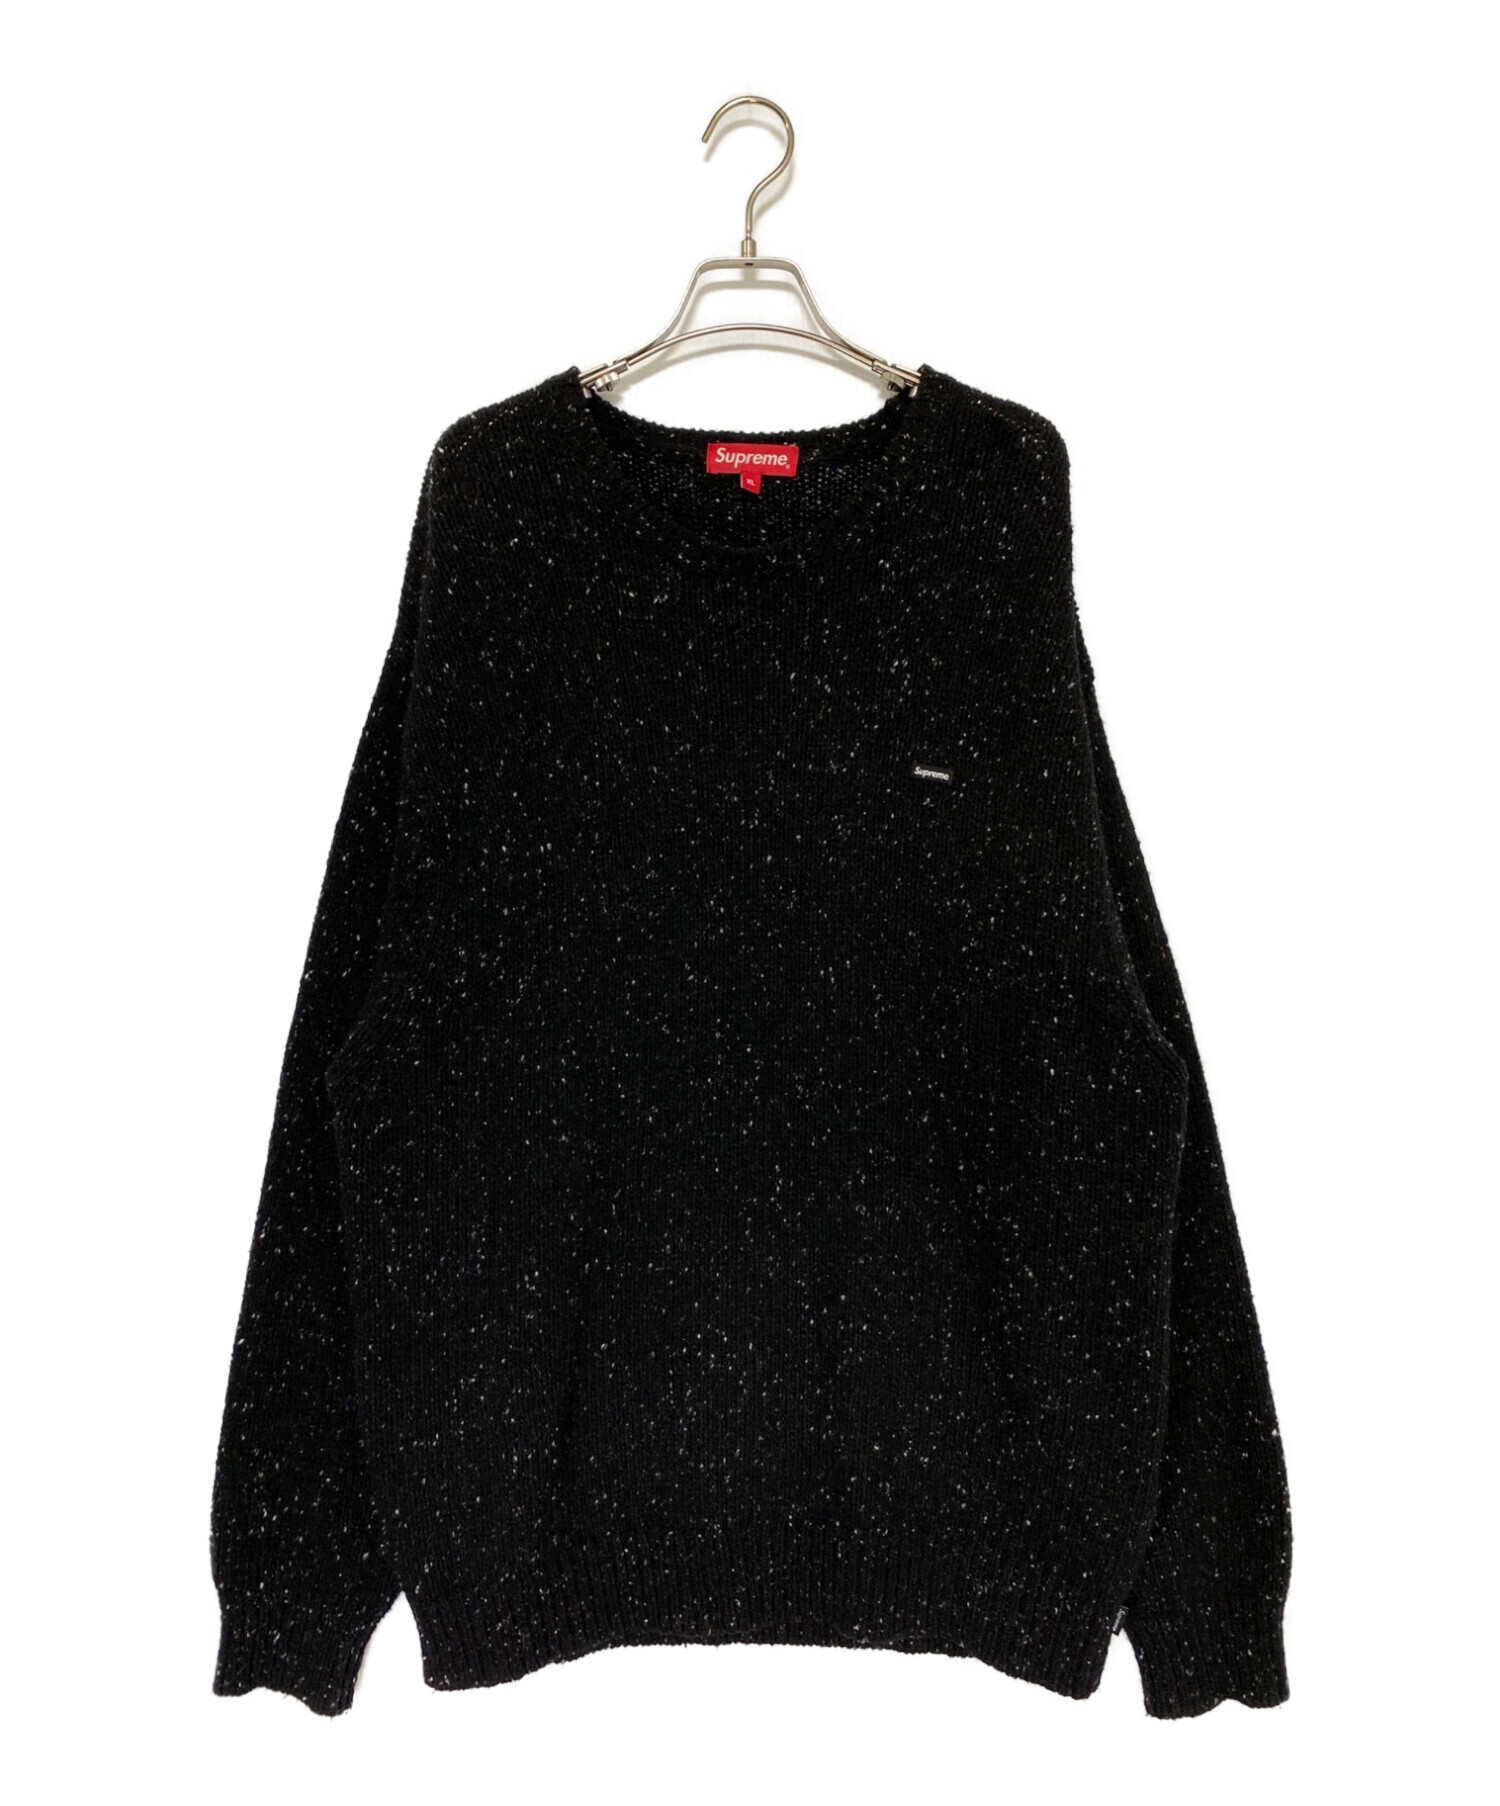 7,310円Supreme Small Box Speckle Sweater